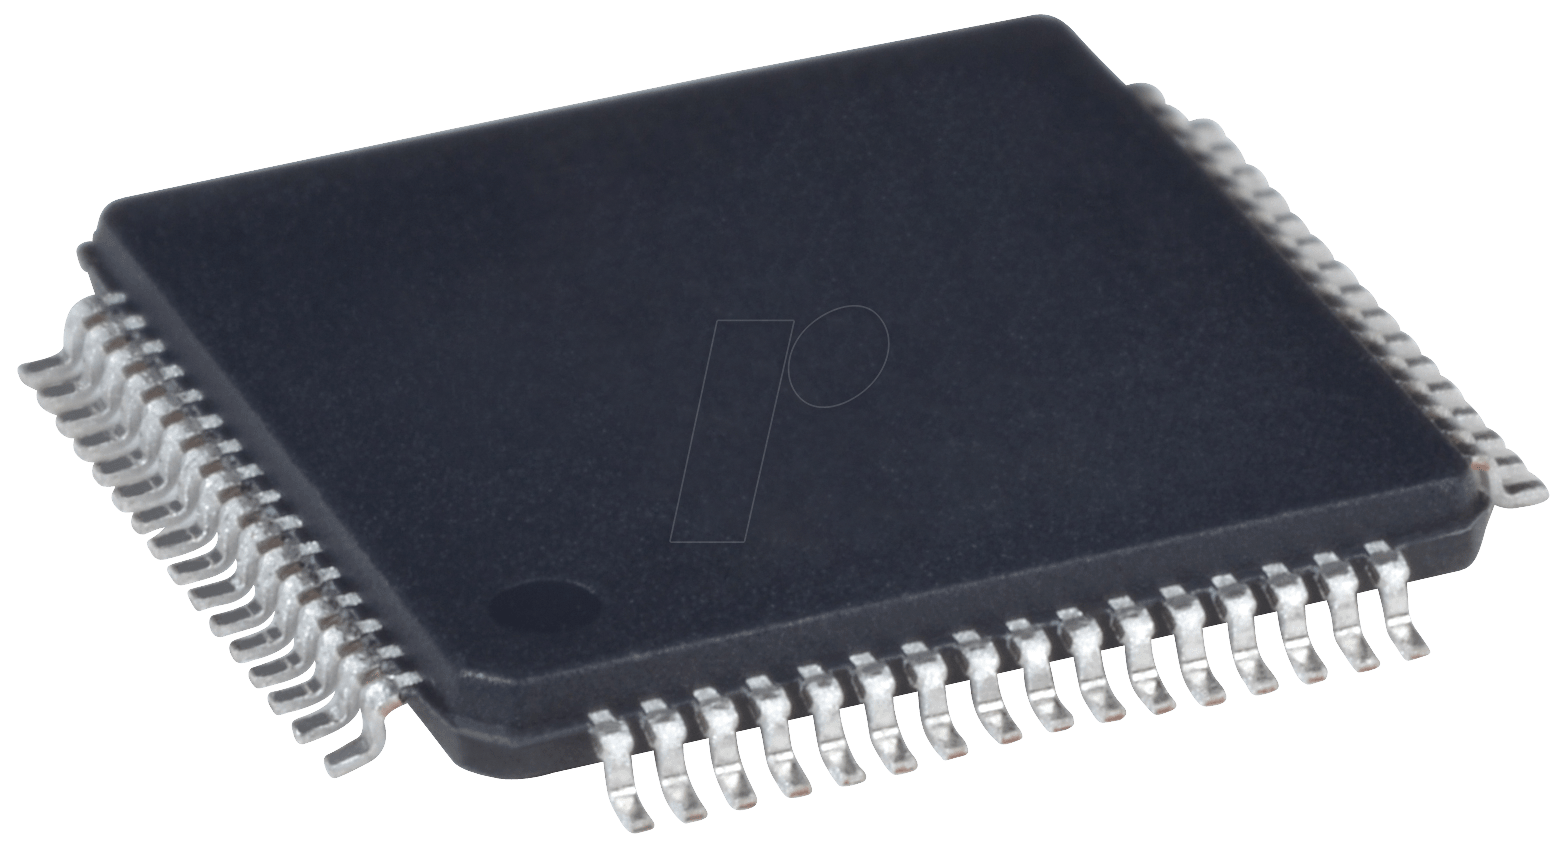 33FJ128MC706-IPT - MCU, dsPIC, 16-bit, 128 KB, TQFP-64 von MICROCHIP